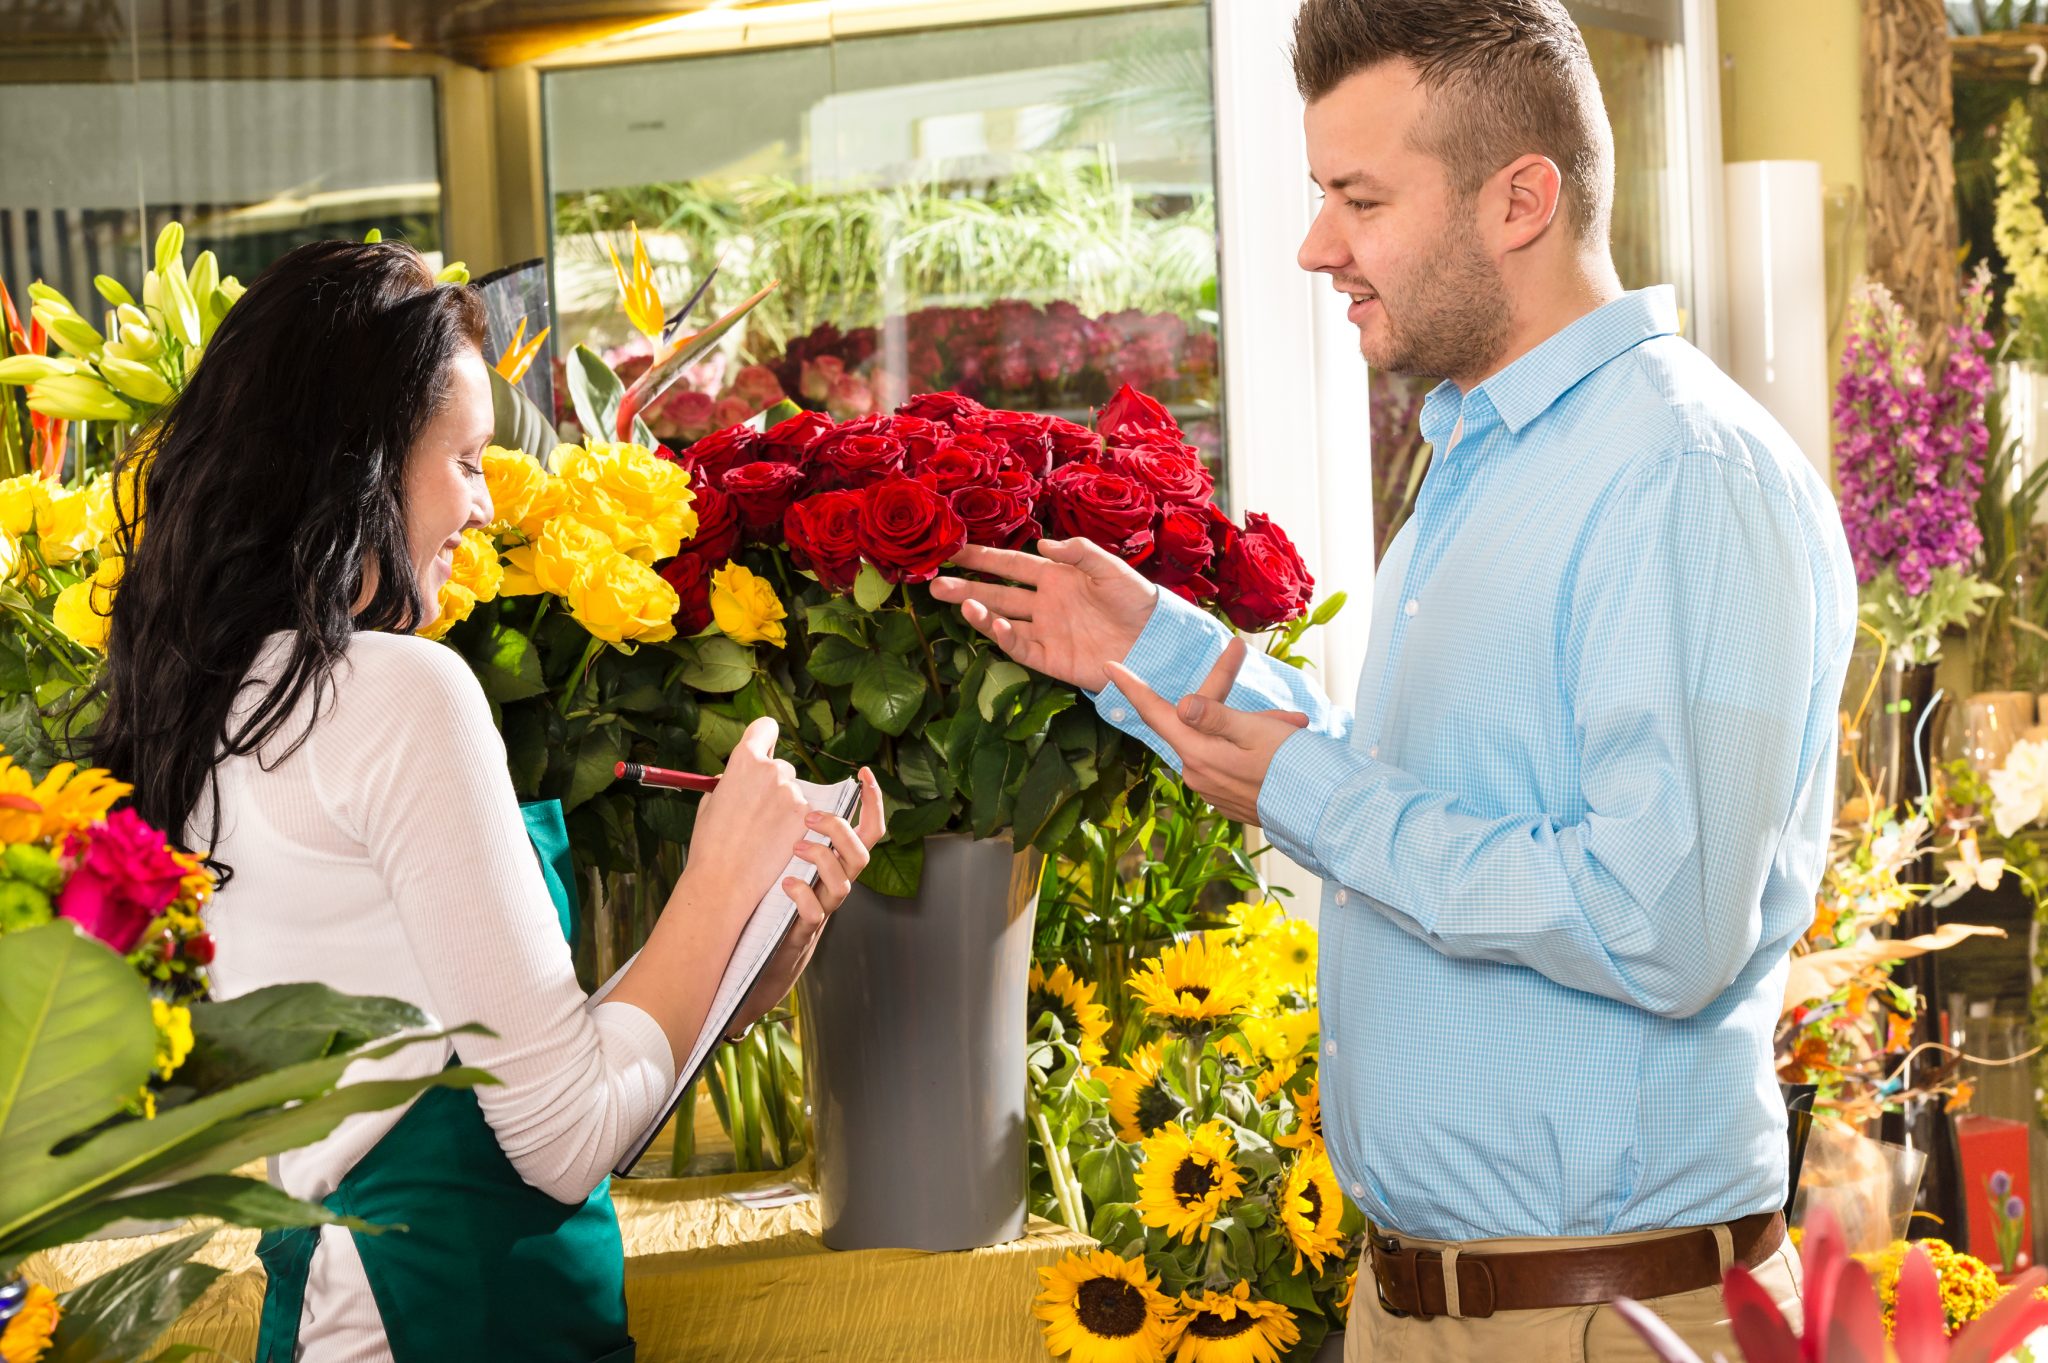 Купить розы в цветочном магазине. Дарит цветы. Человек с букетом. Парень дарит цветы. Мужчина в цветочном магазине.